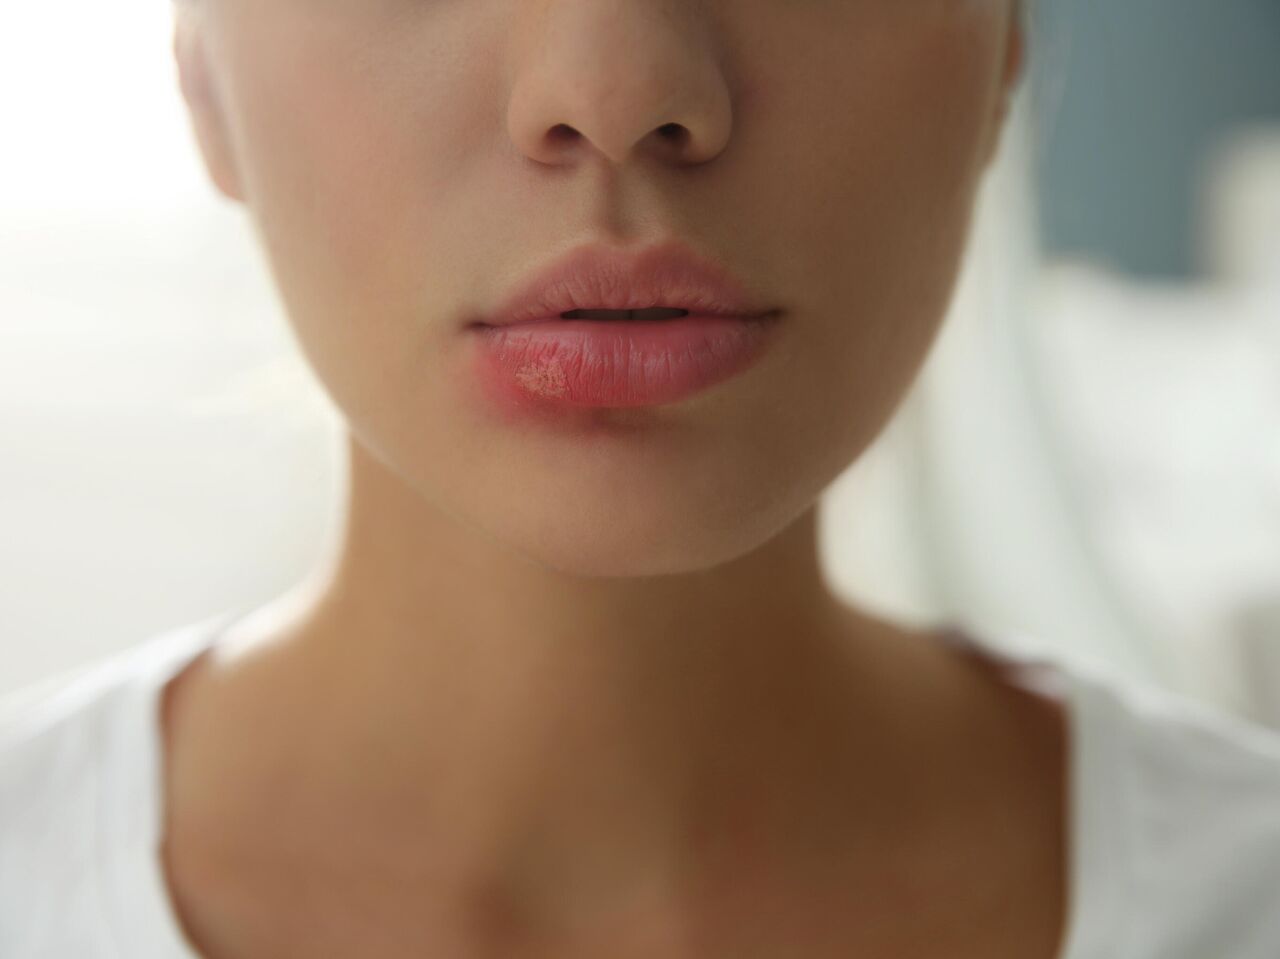 Герпес губ: причины, проявления, лечение